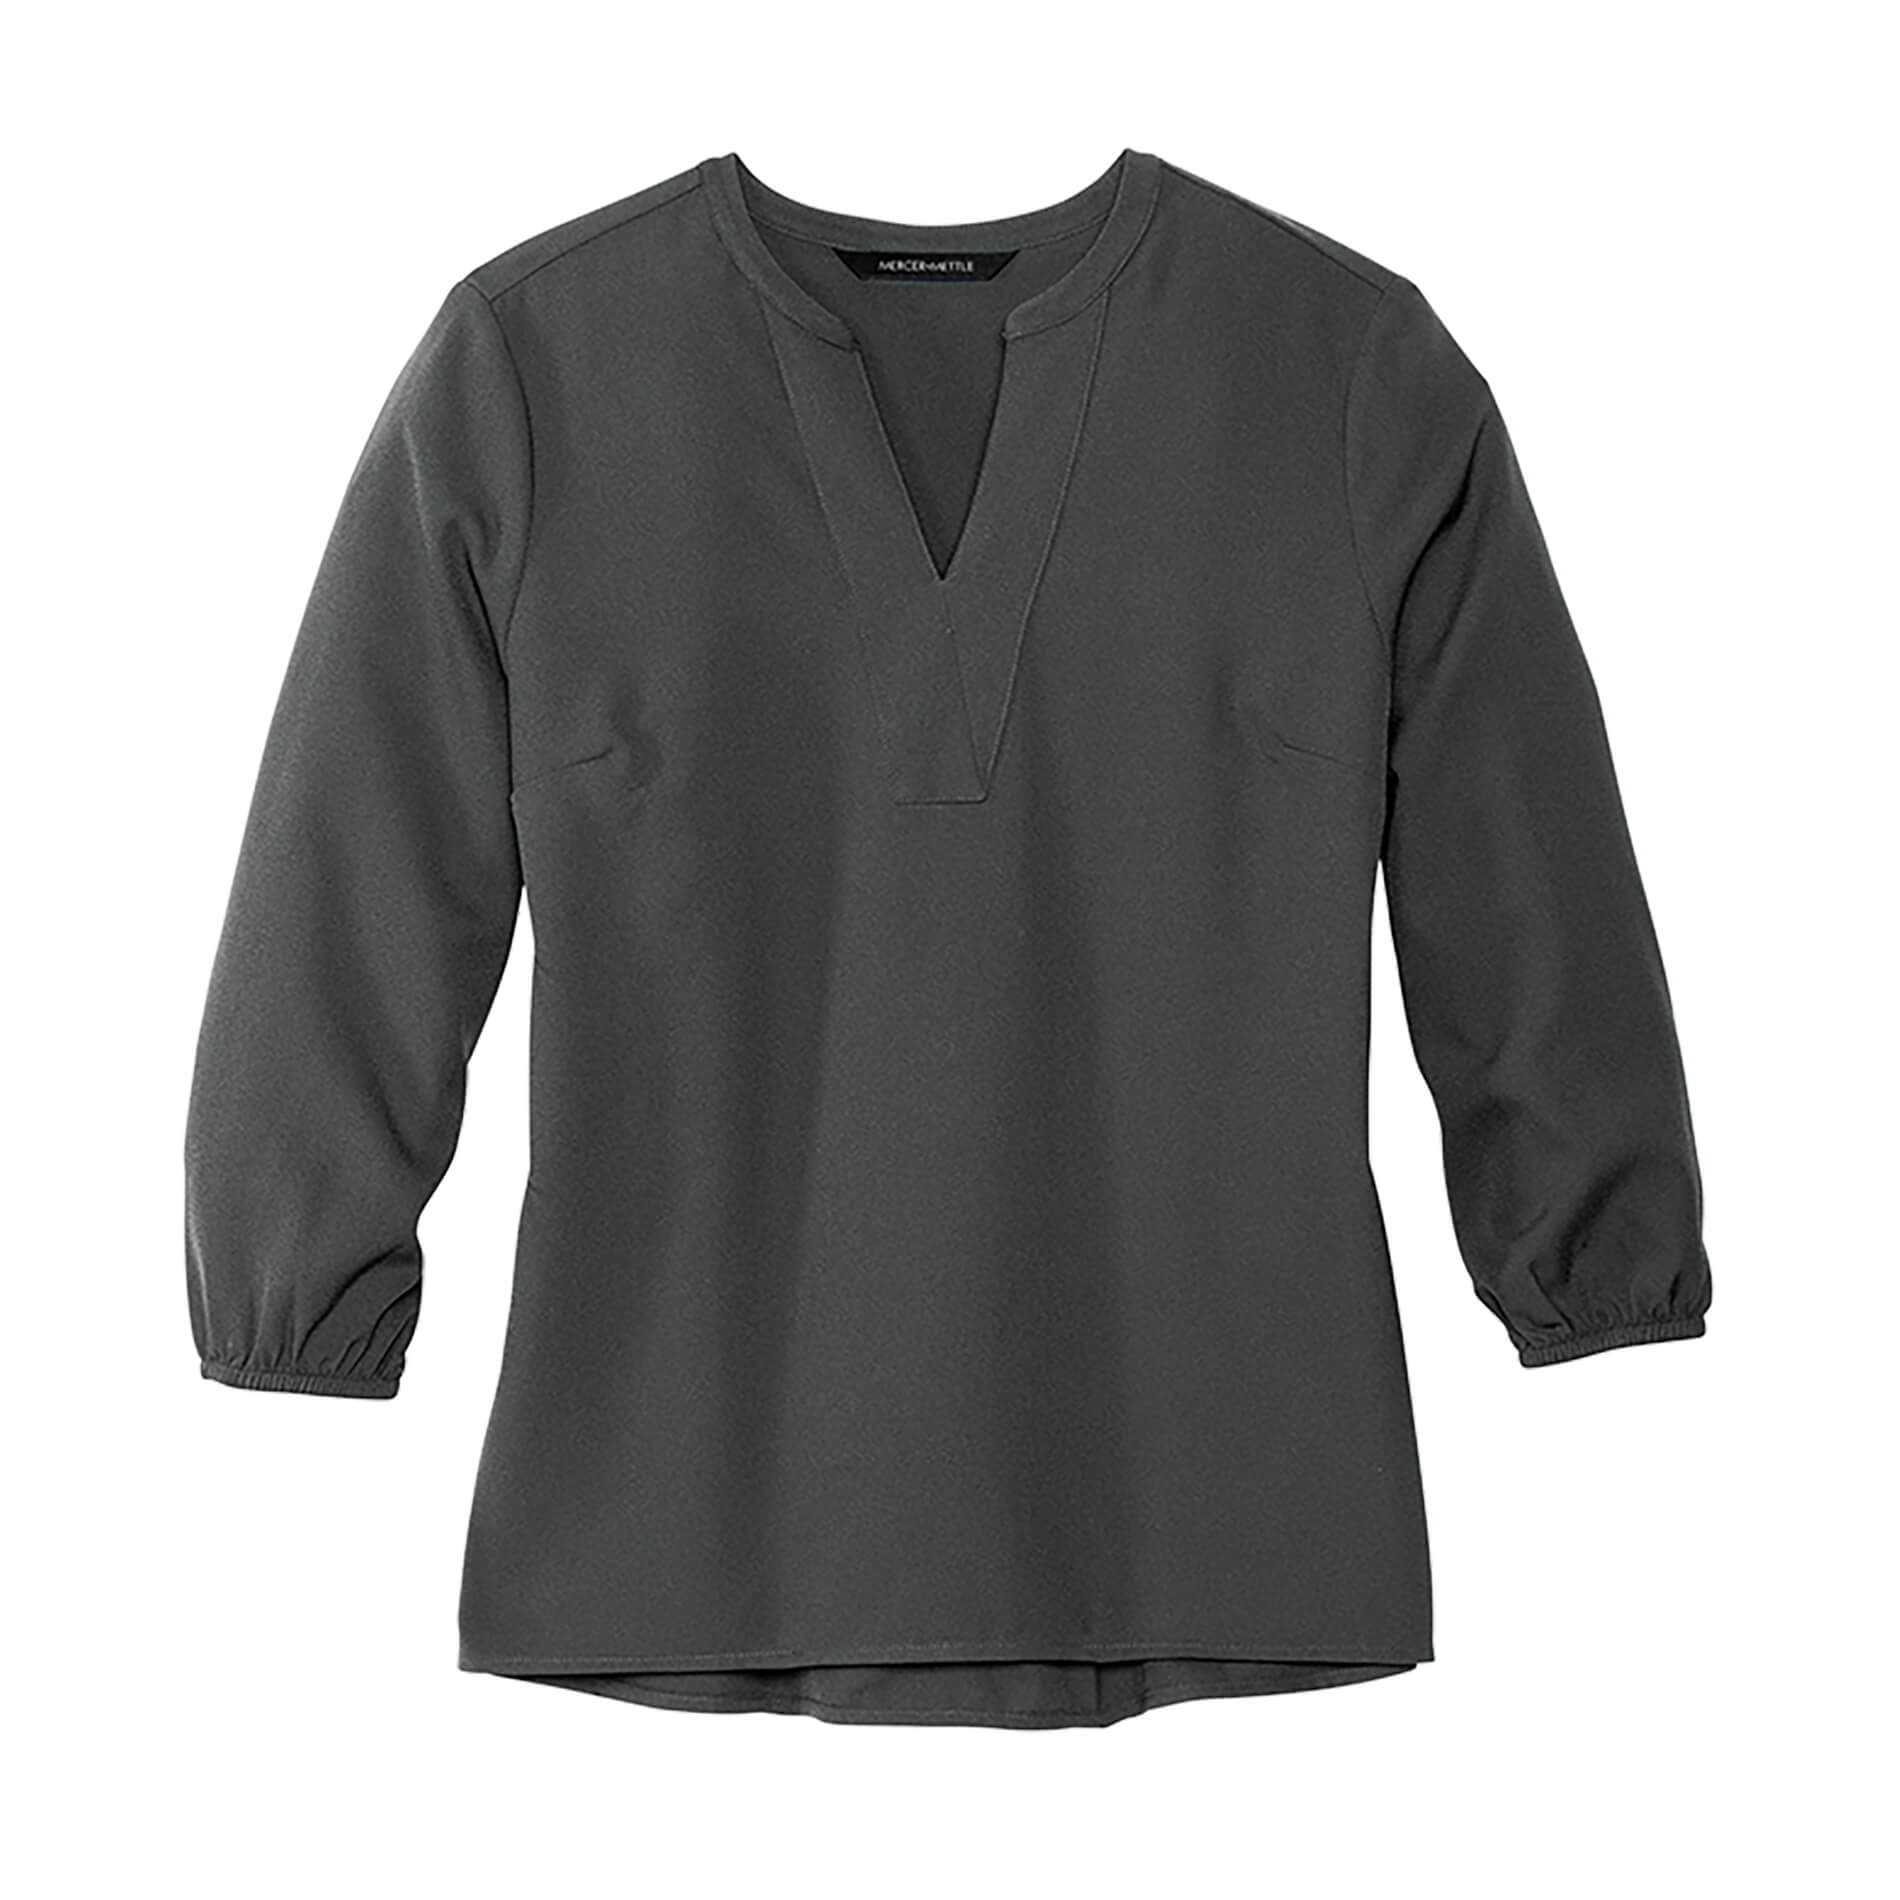 Dahl Automotive Online Store: Mercer + Mettle Women's 3/4 Sleeve Blouse